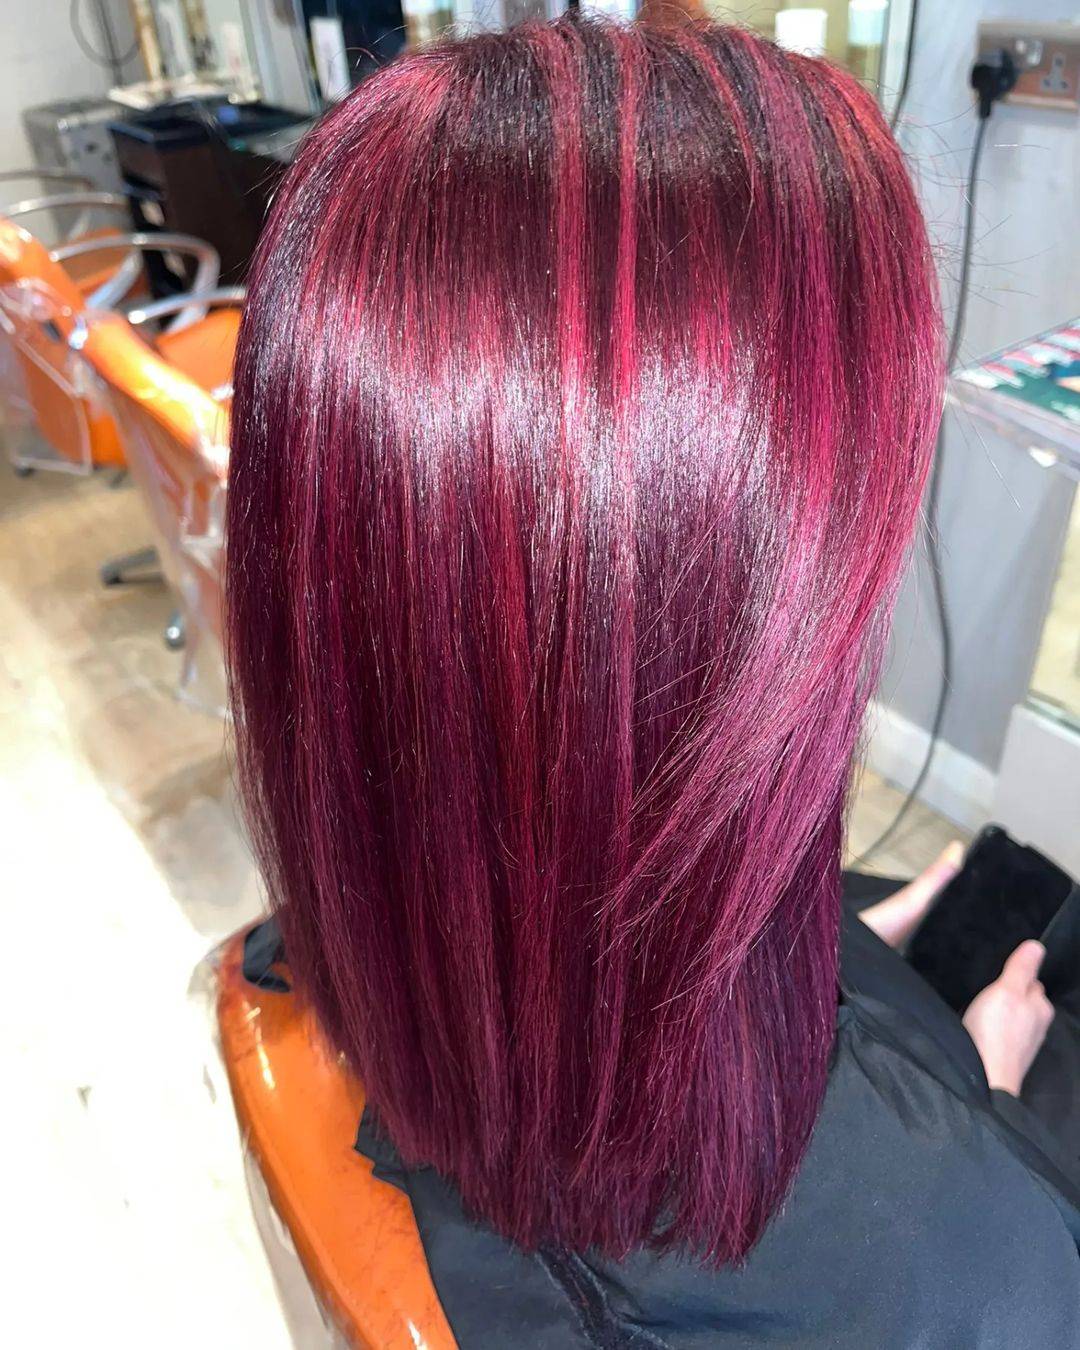 Burgundy hair color 112 burgundy hair color | burgundy hair color for women | burgundy hair color highlights Burgundy Hair Color